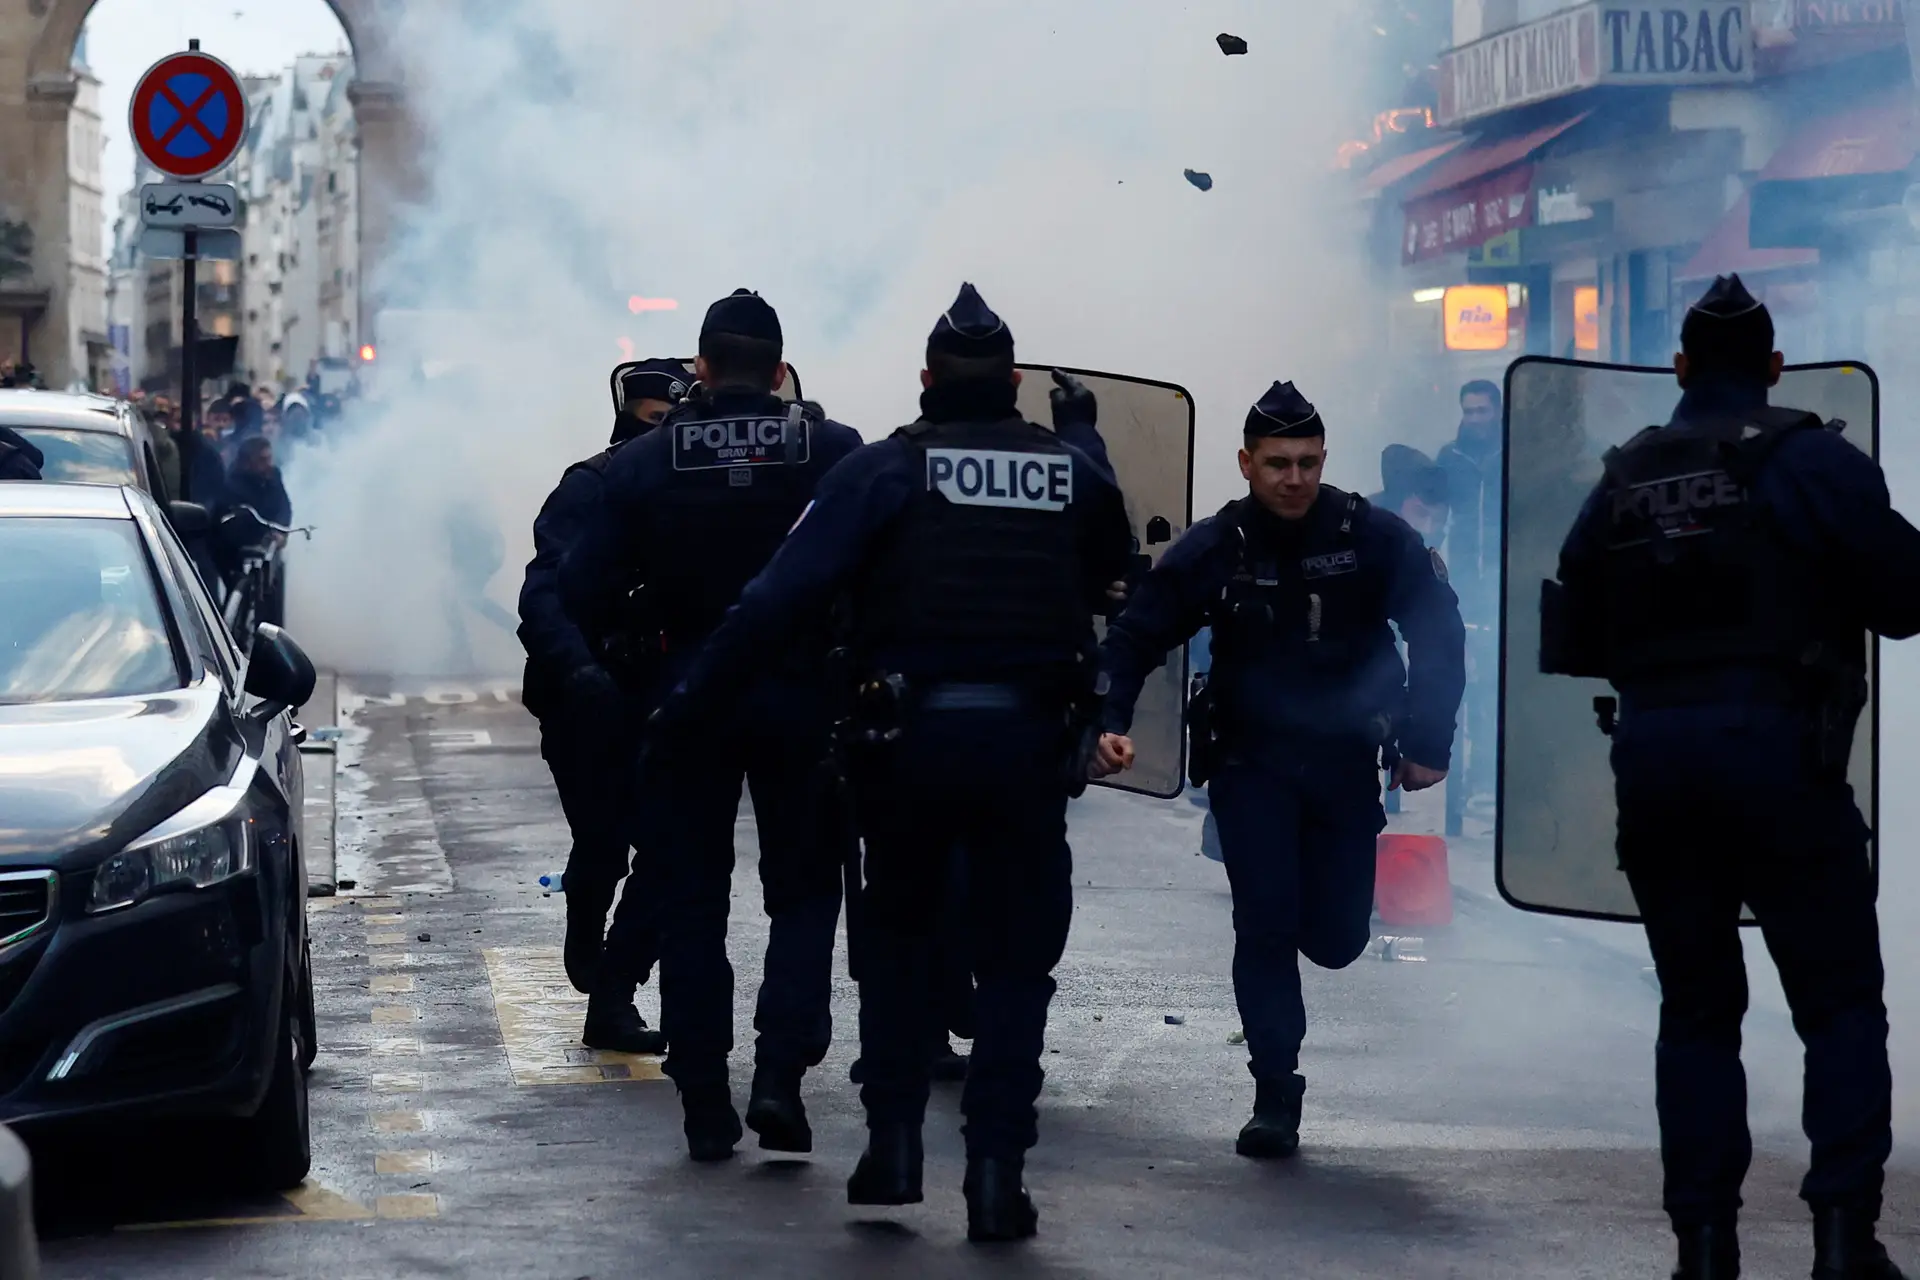 Tensão e caos: as imagens de uma tarde de violência em Paris